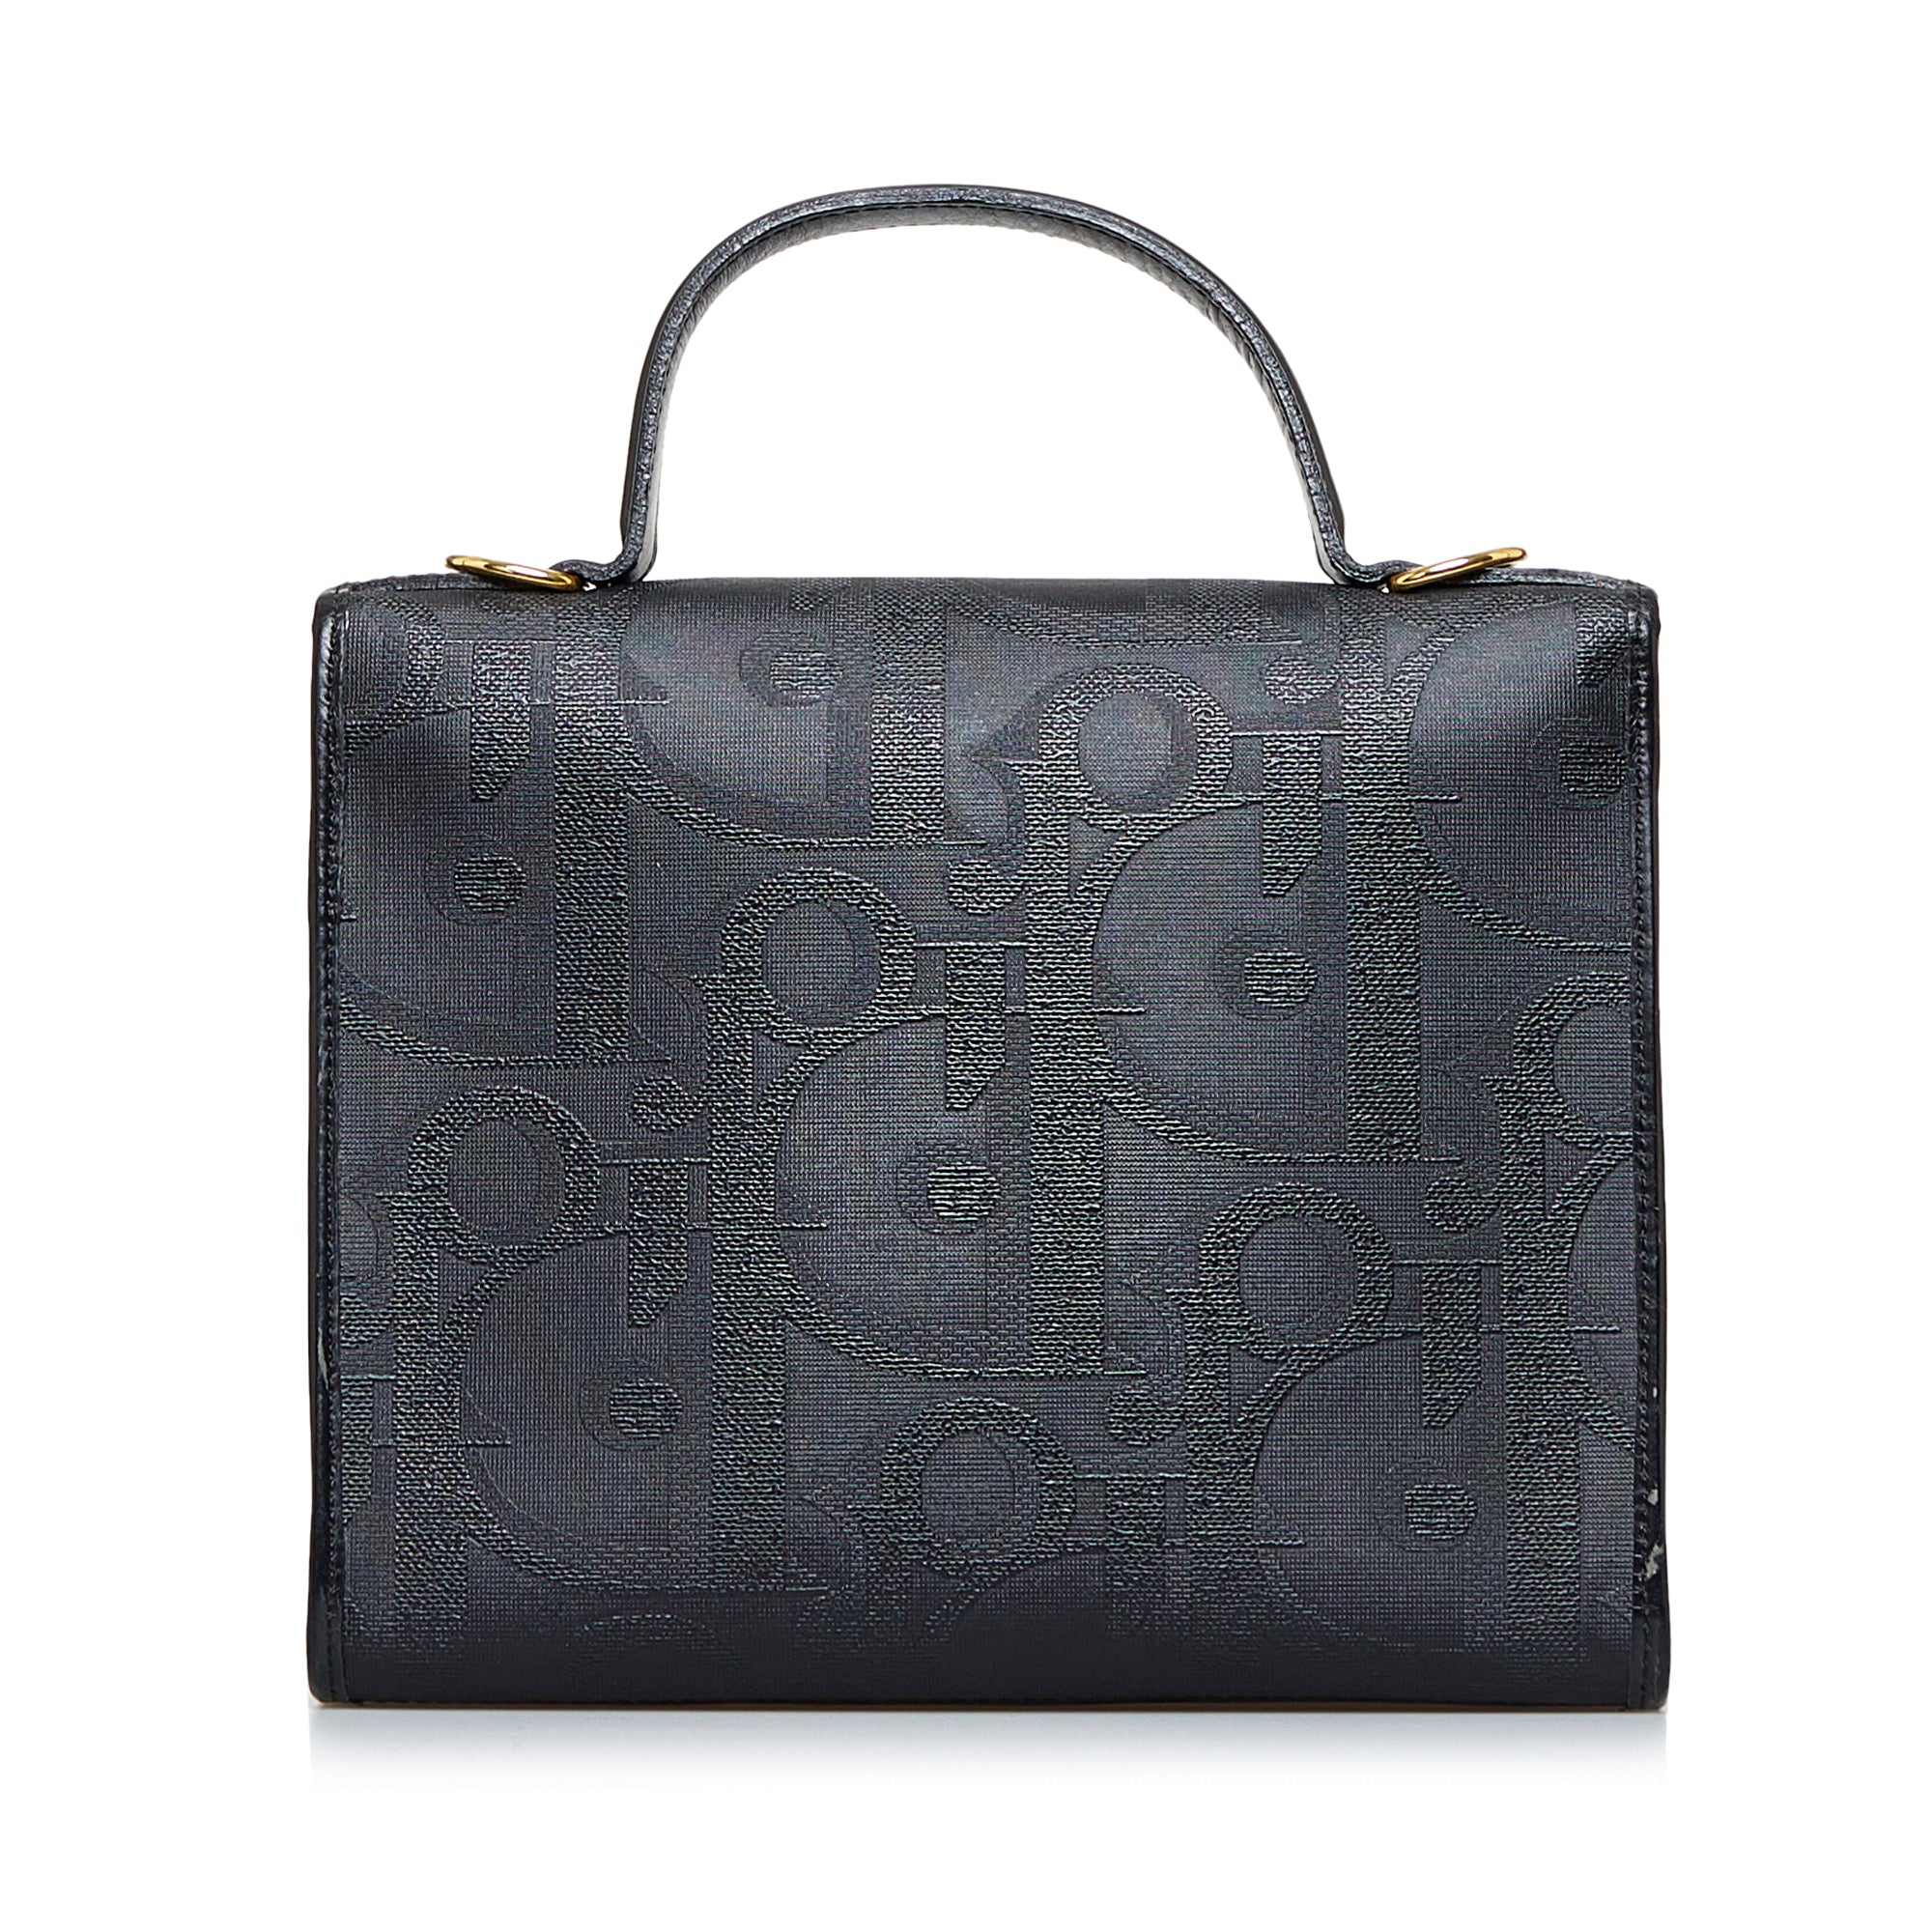 Vintage Dior Oblique monogram barrel bag Black Bag Made In France Authentic